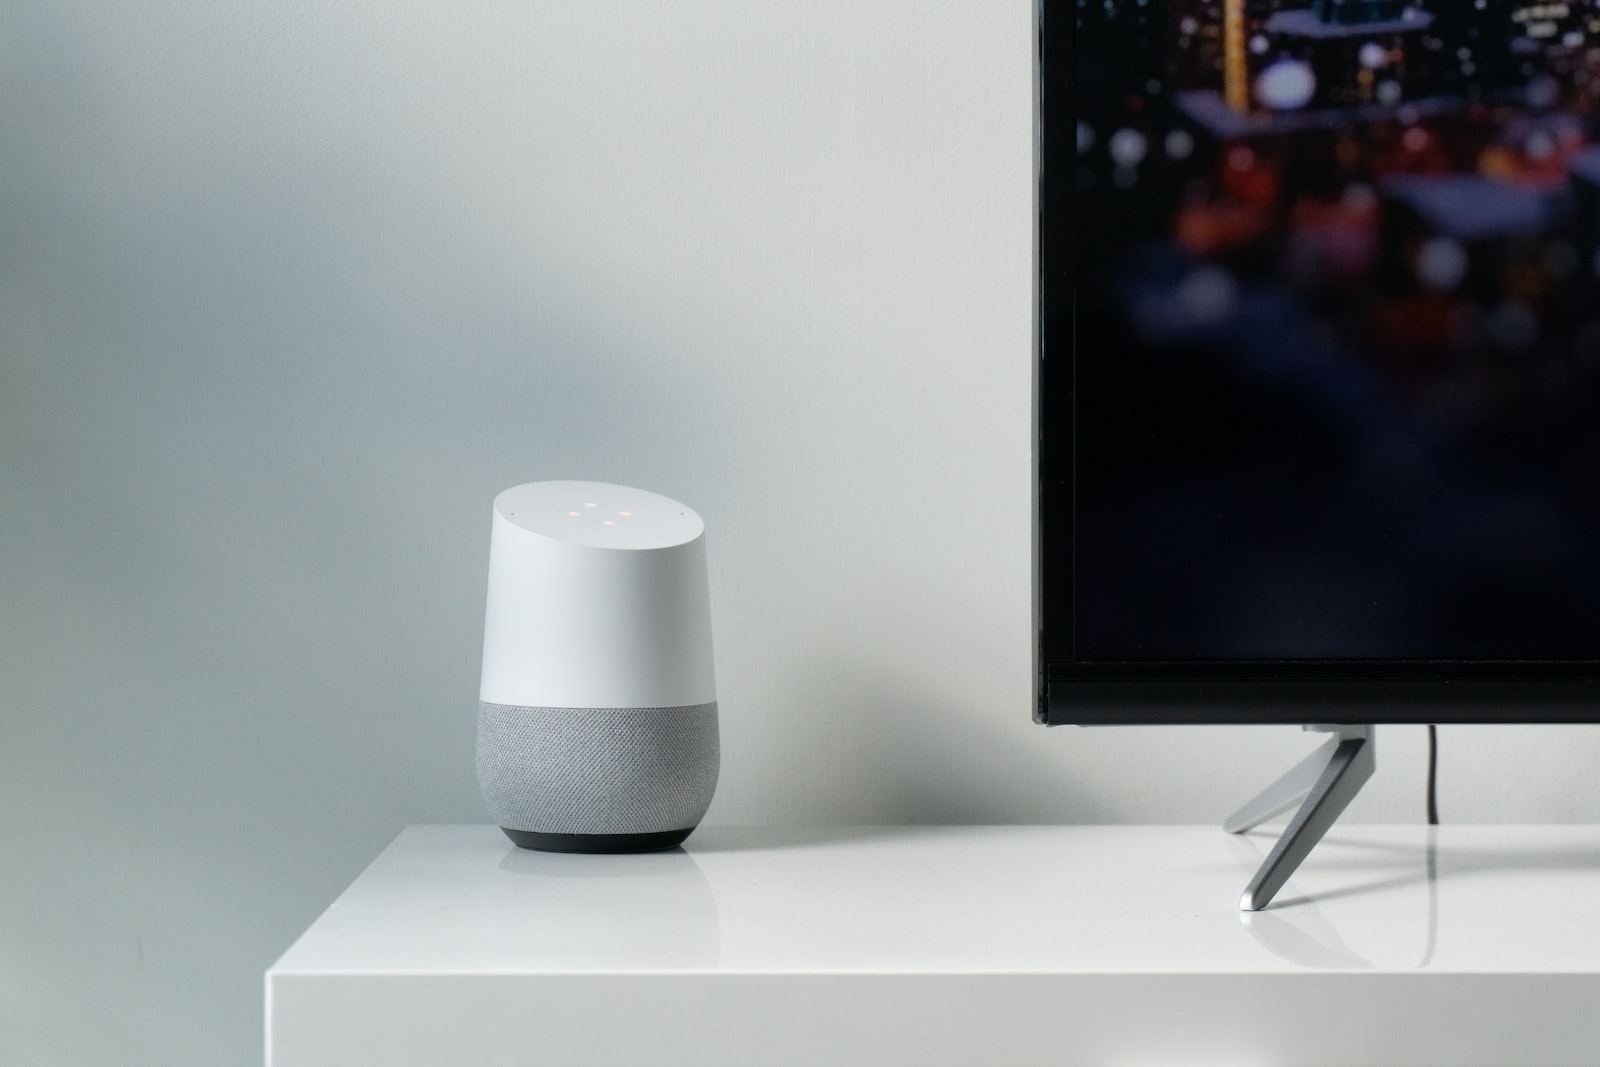 white and gray Google smart speaker beside black flat screen TV